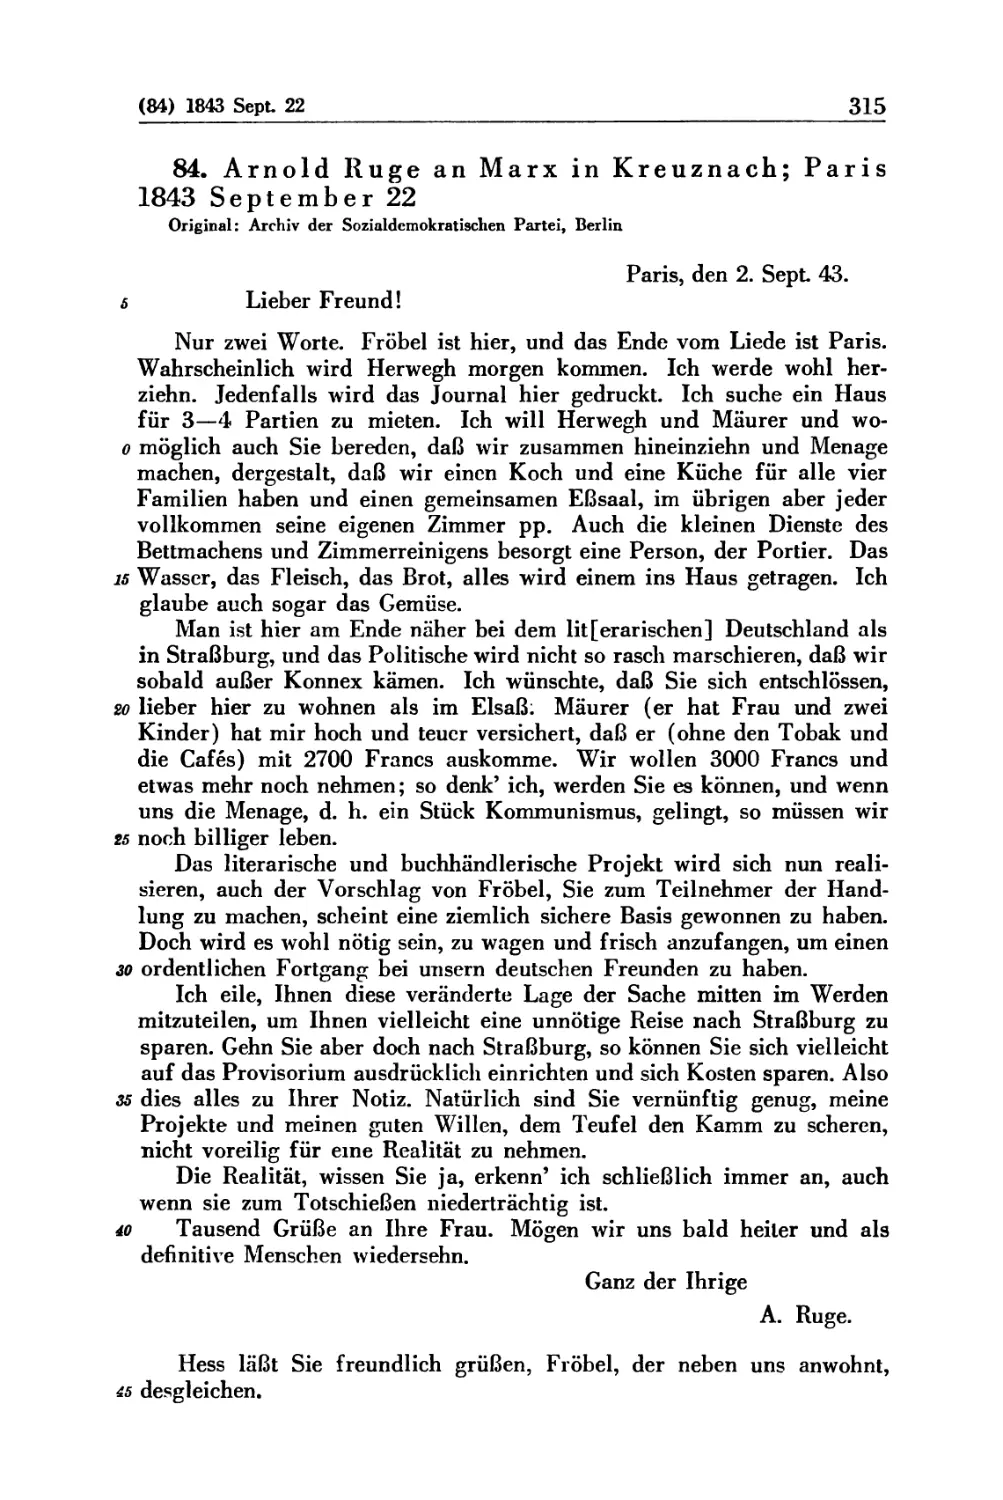 84. Arnold Ruge an Marx in Kreuznach; Paris 1843 September 22